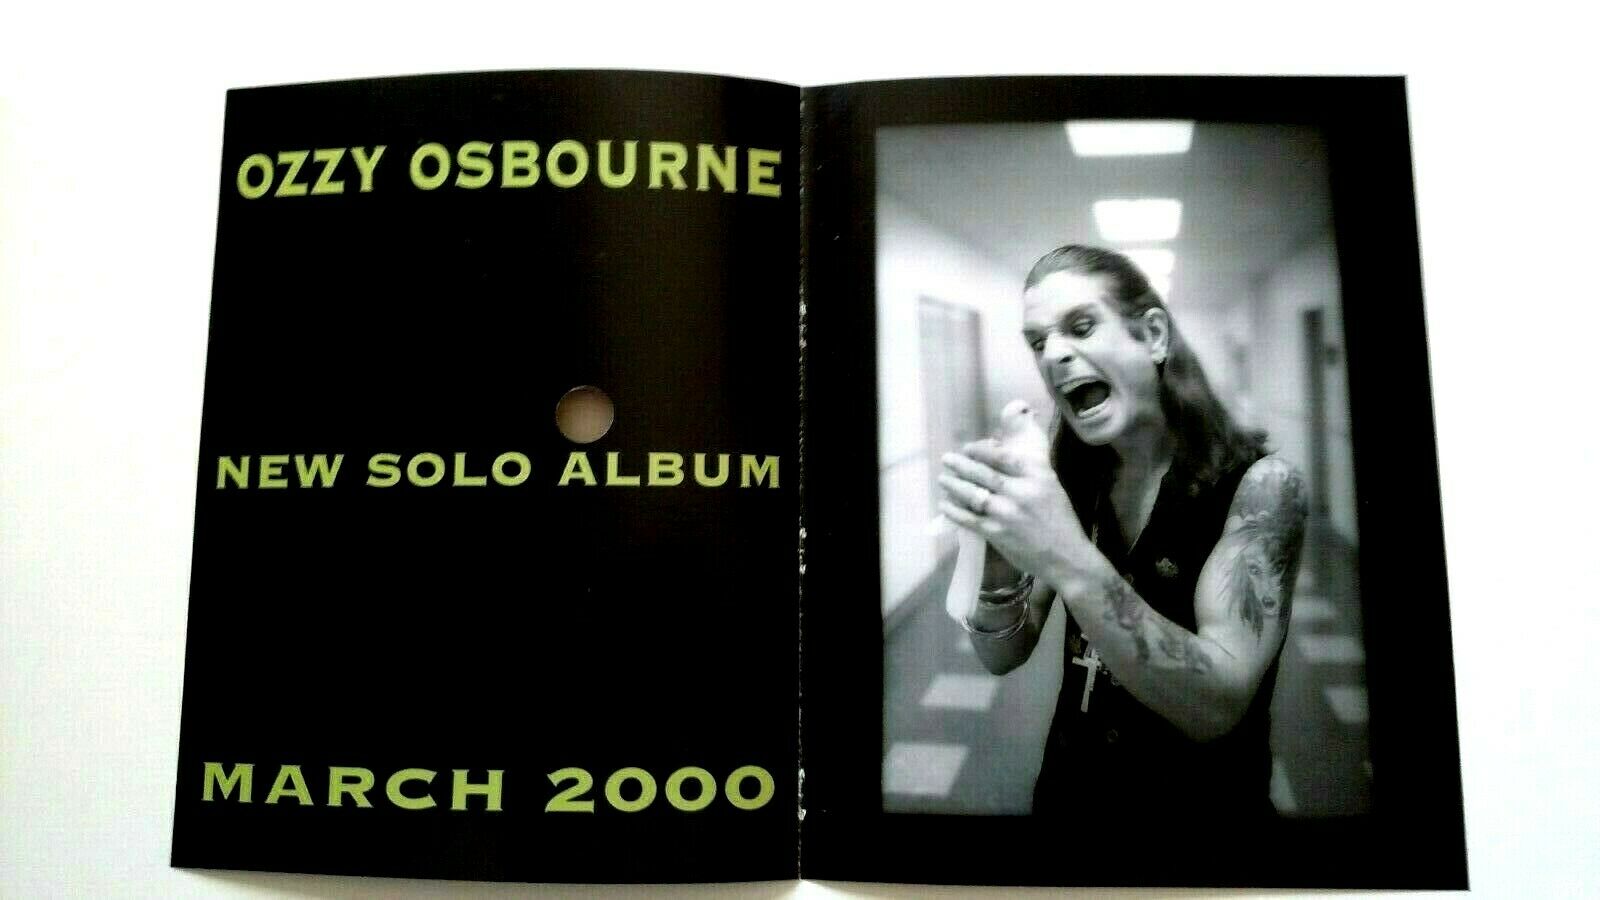 Ozzy Osbourne New Solo Album March 2000. Rare Original Print Promo Poster Ad